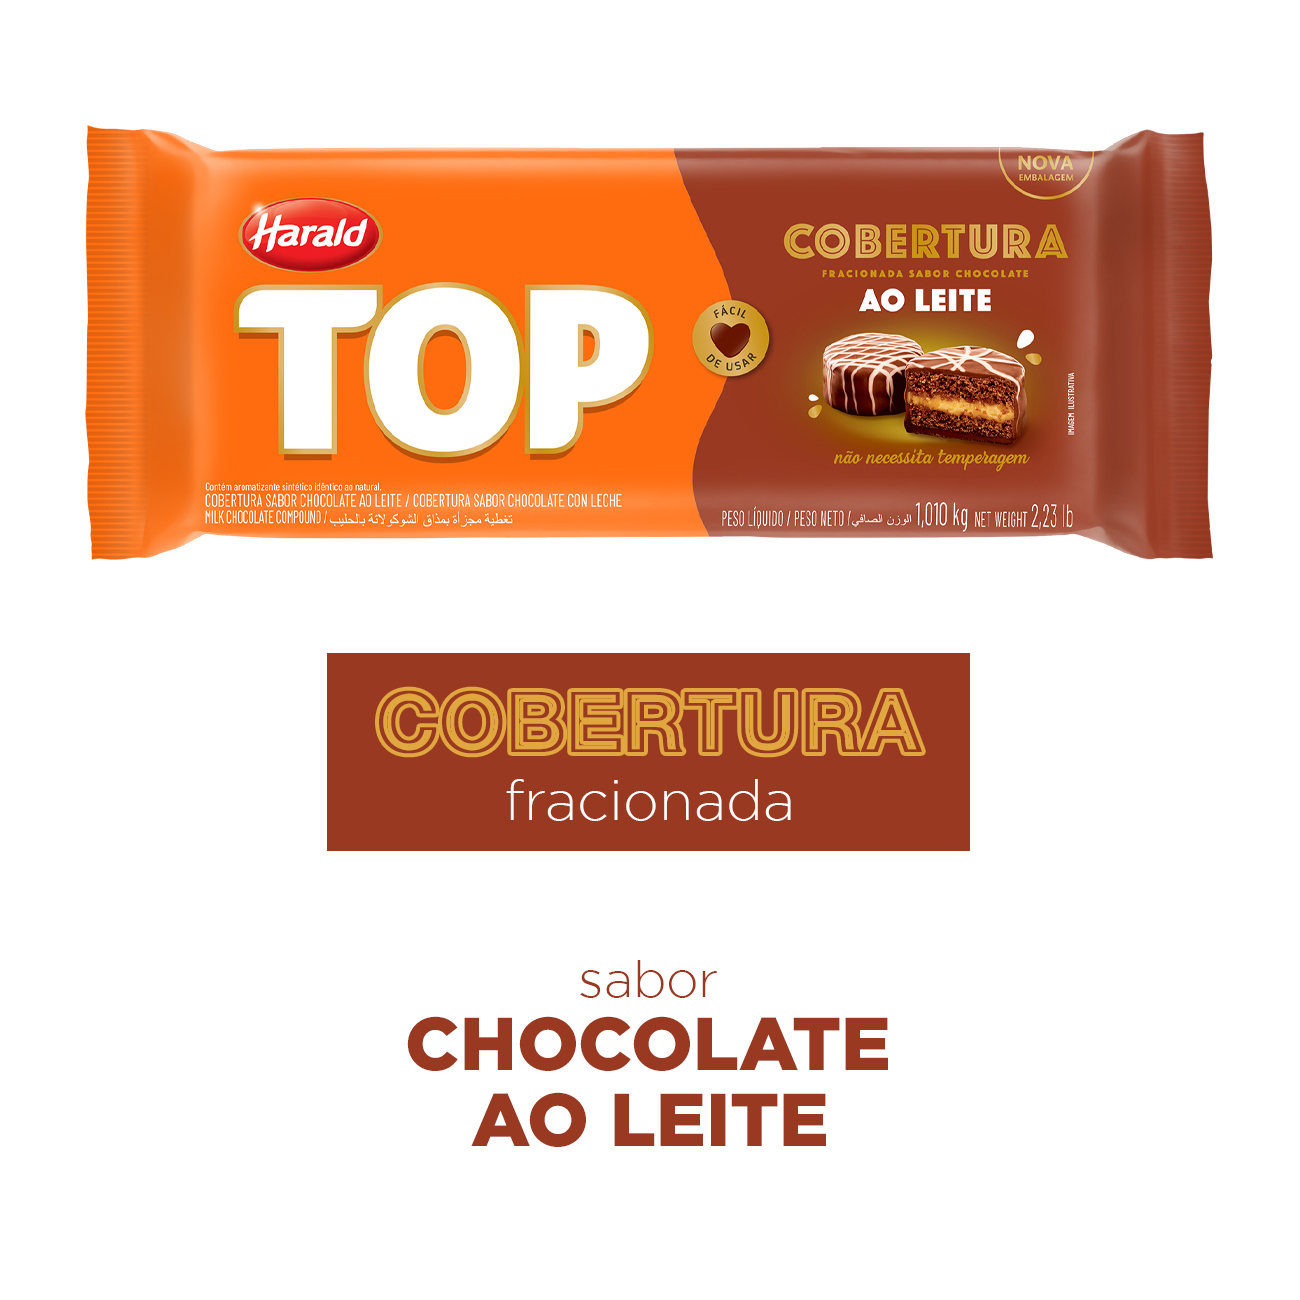 Cobertura de Chocolate em Barra Harald Top ao Leite 1,01kg